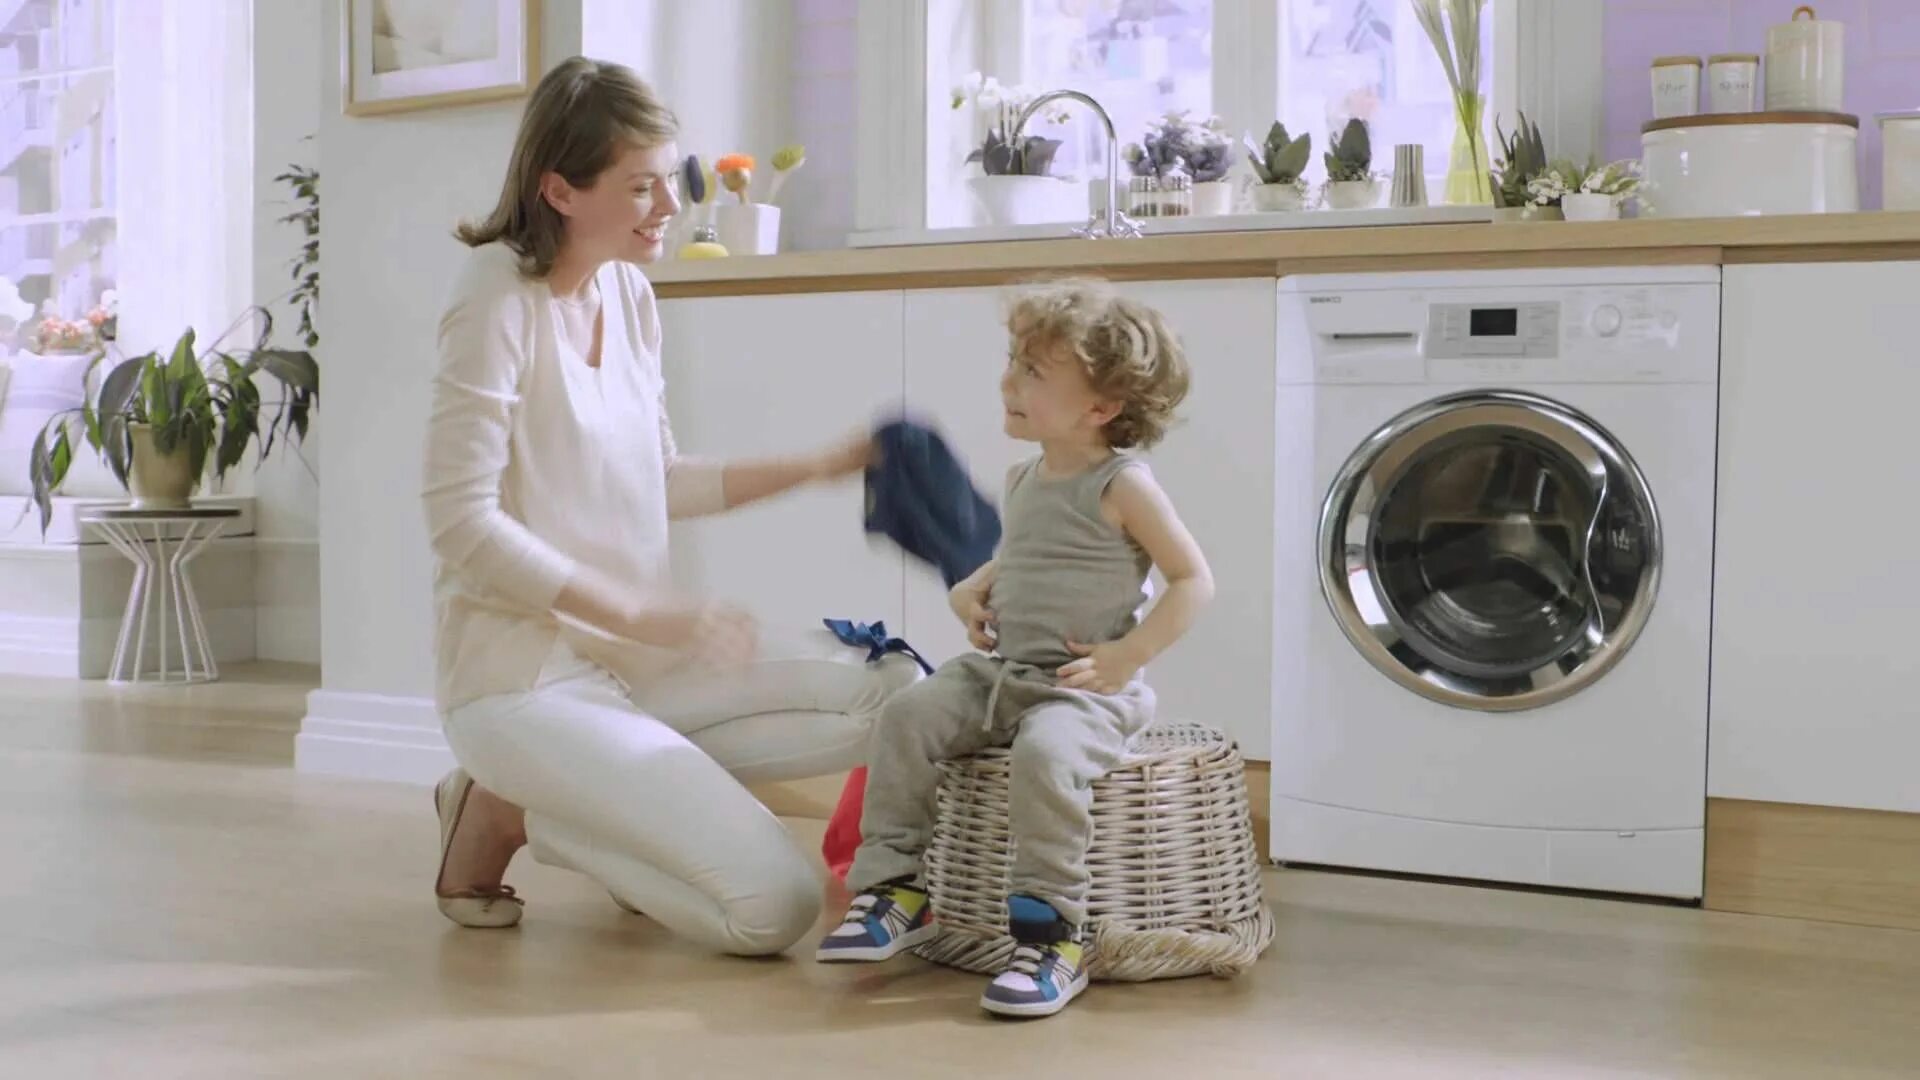 Мама стиральная машина. Реклама стиральной машины. Стиральная машина для детей. Стиральная машина в интерьере. Мама и дочка стиральная машинка.